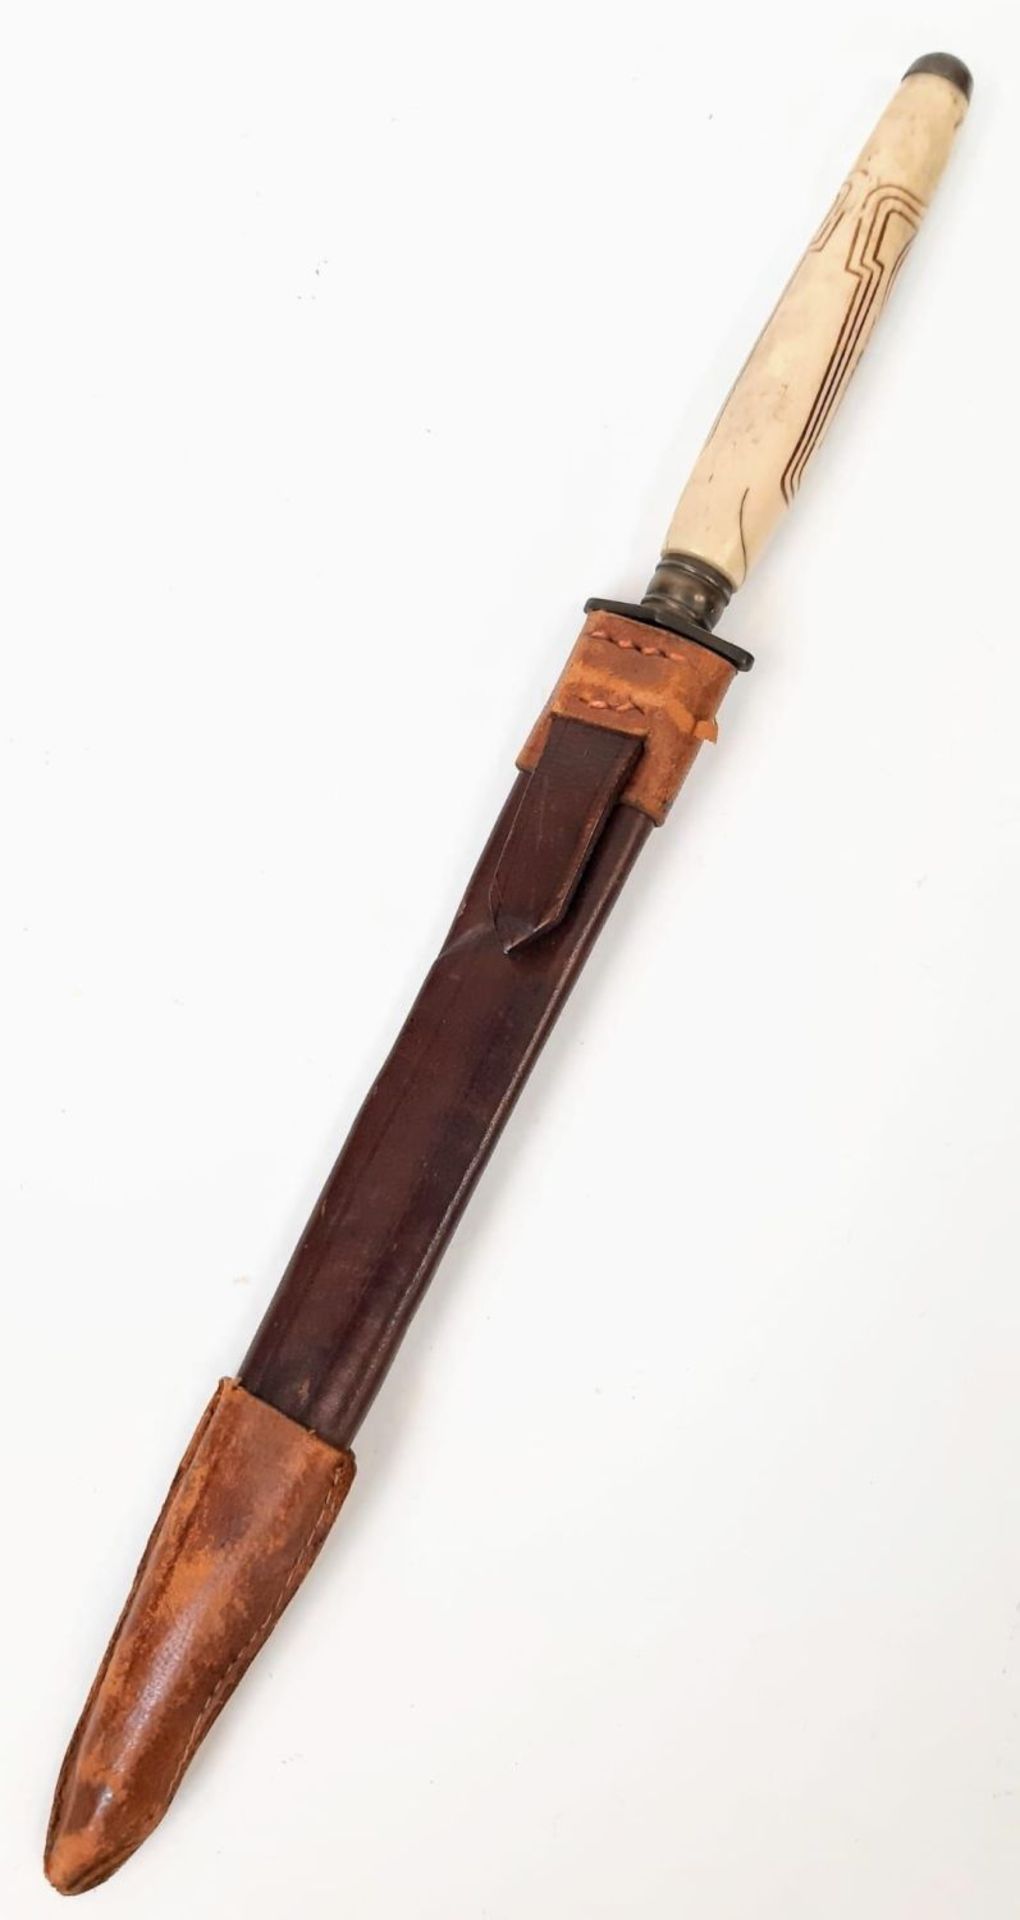 An Antique Unique Art Nouveau Decorated Bone Handle Stiletto Dagger in Leather Sheath. 29cm Length. - Image 12 of 12